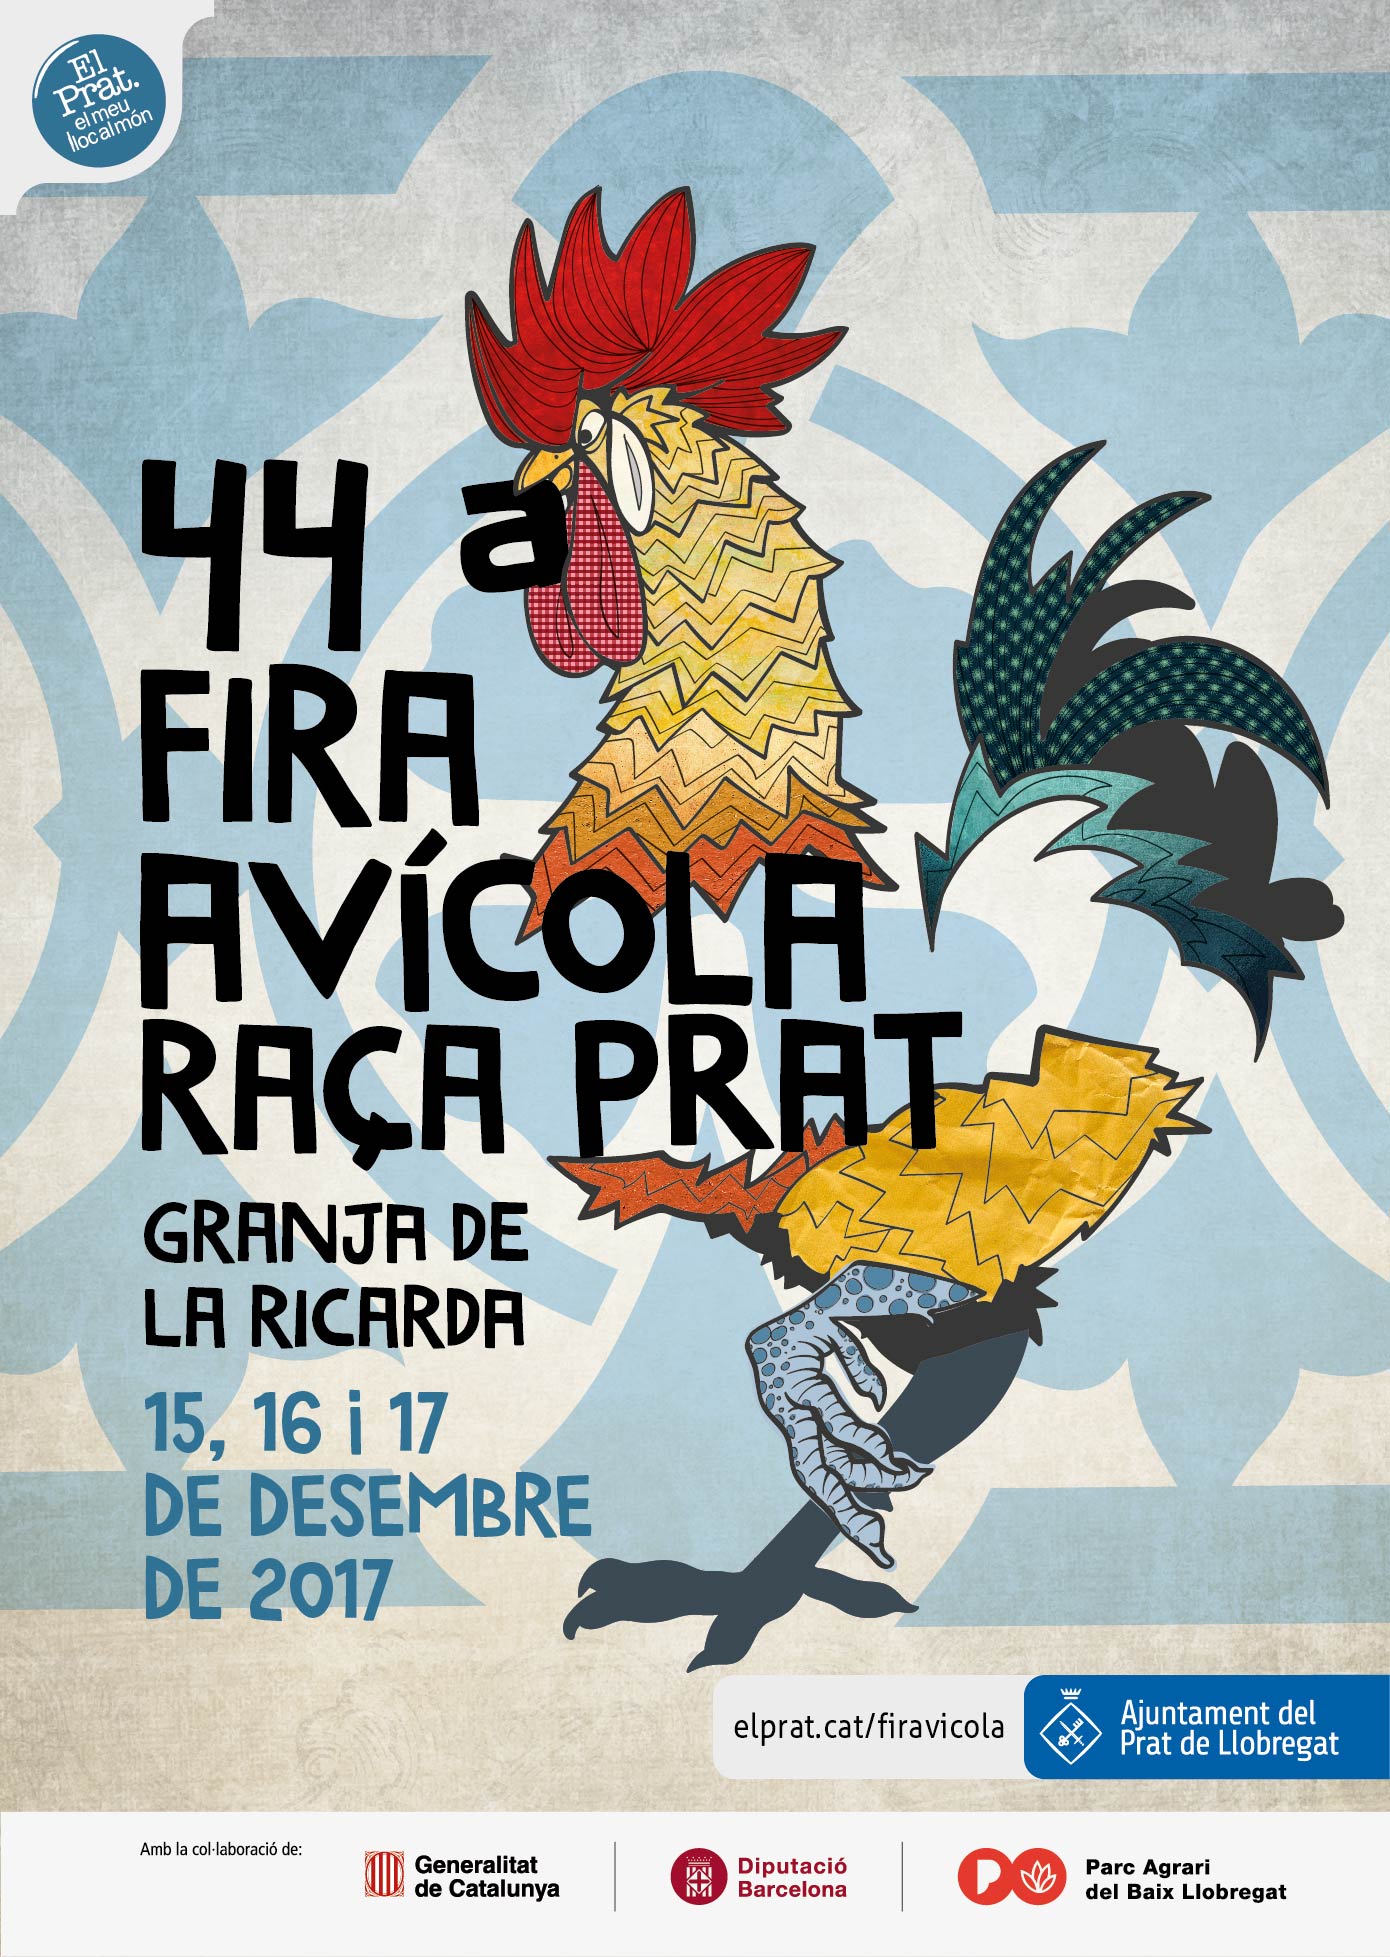 Disseny campanya gràfica 44a Fira avícola Raça Prat by Satur Herraiz - Creative Work